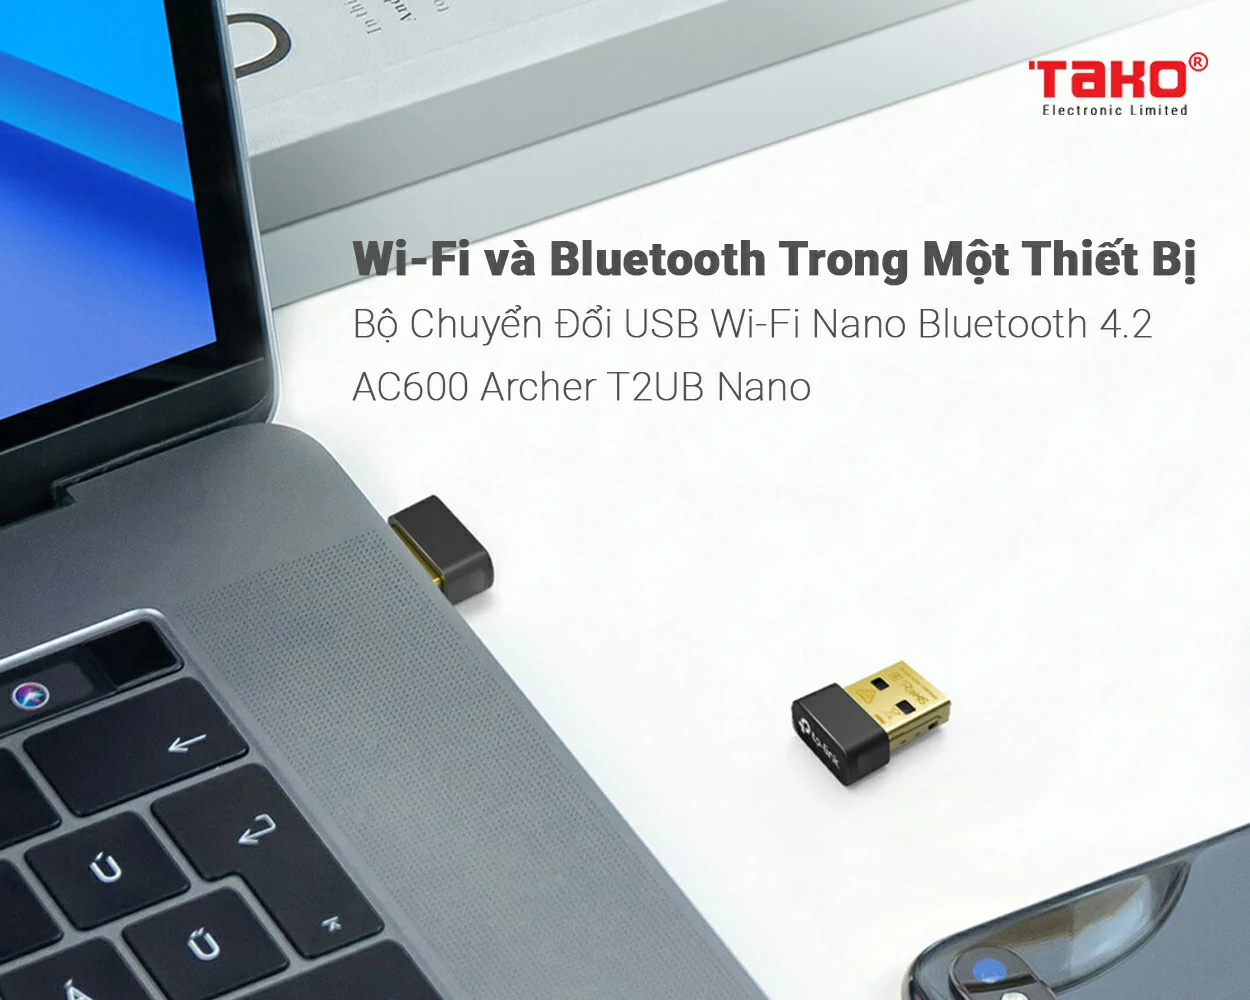 Archer T2UB Nano Bộ Chuyển Đổi USB Wi-Fi Nano Bluetooth 4.2 AC600 5